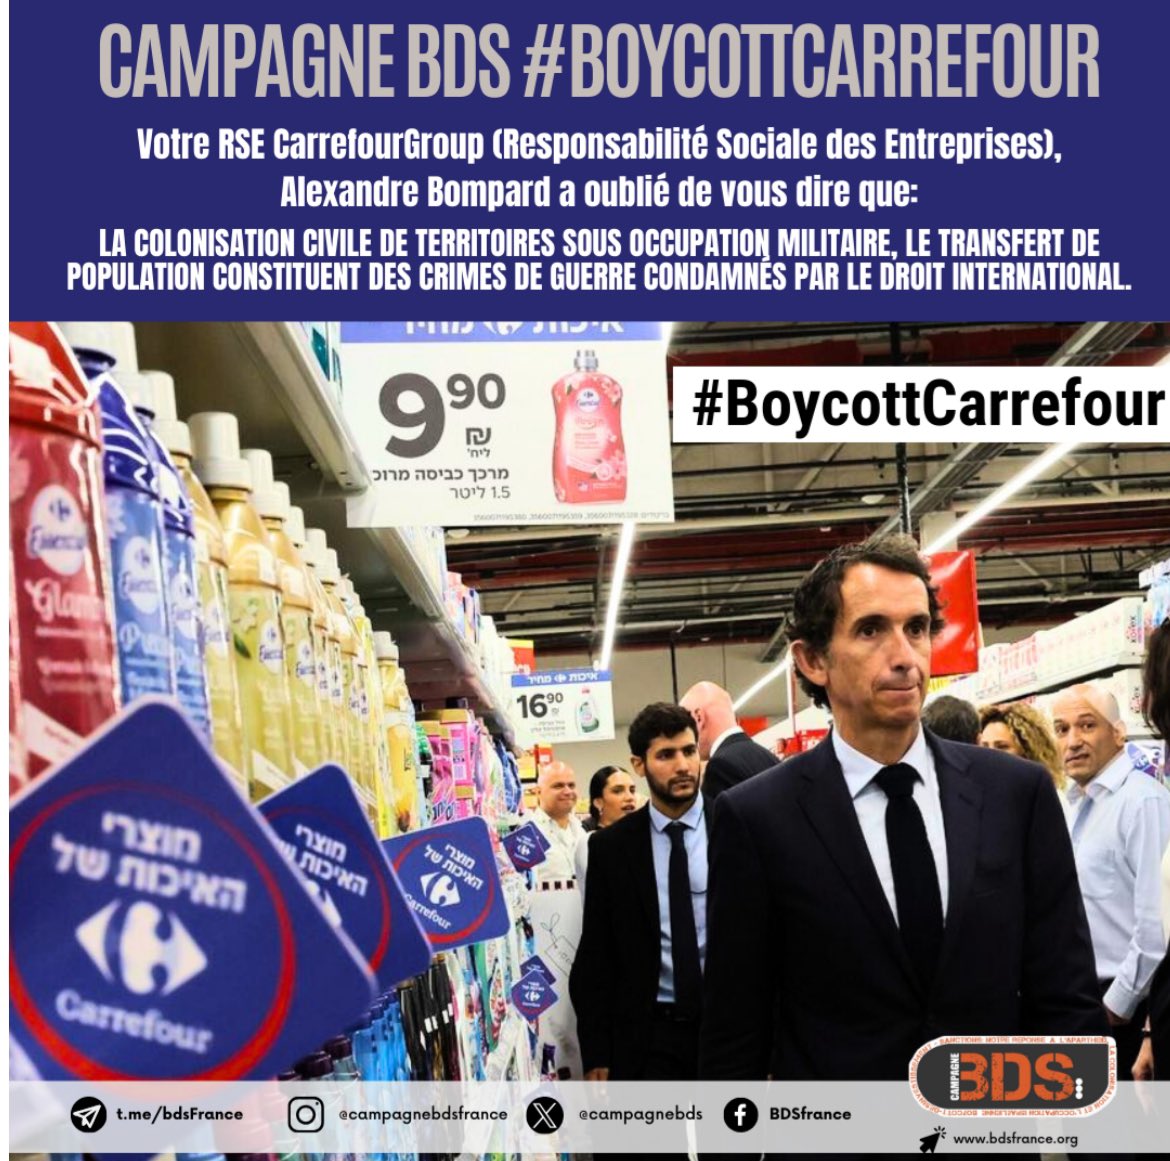 🇵🇸 Aujourd’hui vous allez voir #BoycottCarrefour partout ! C’est normal, l’entreprise et son PDG @bompard se rendent complices de graves crimes contre les palestiniens. Soyons clairs, chaque fois que nous dépensons de l’argent chez carrefour nous soutenons un génocide.